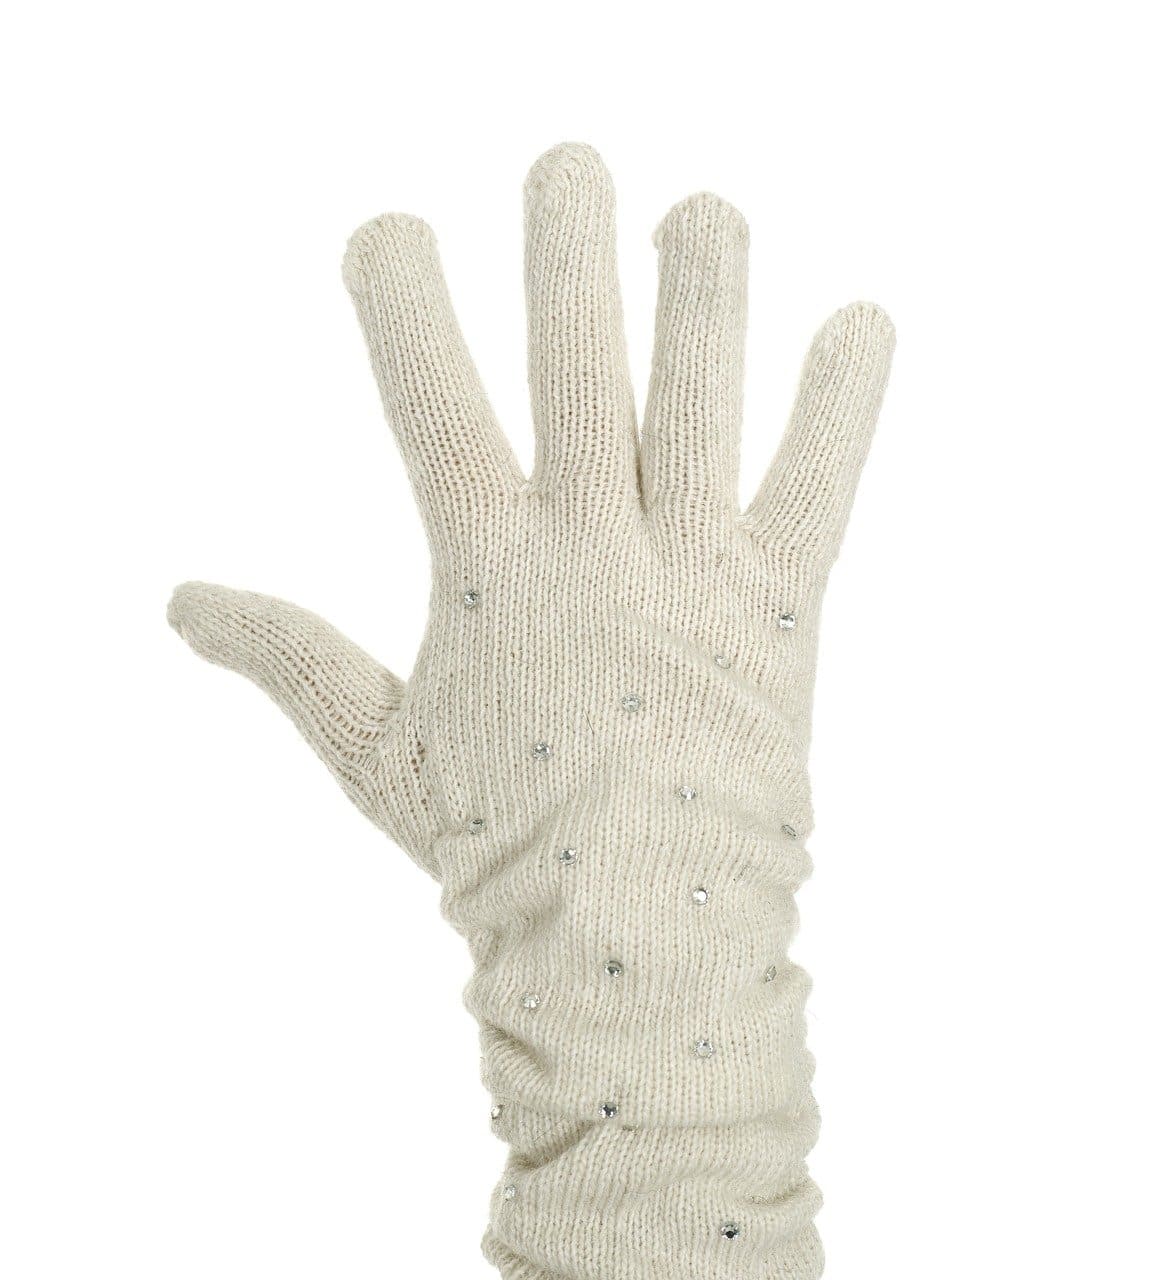 Mitten Gloves